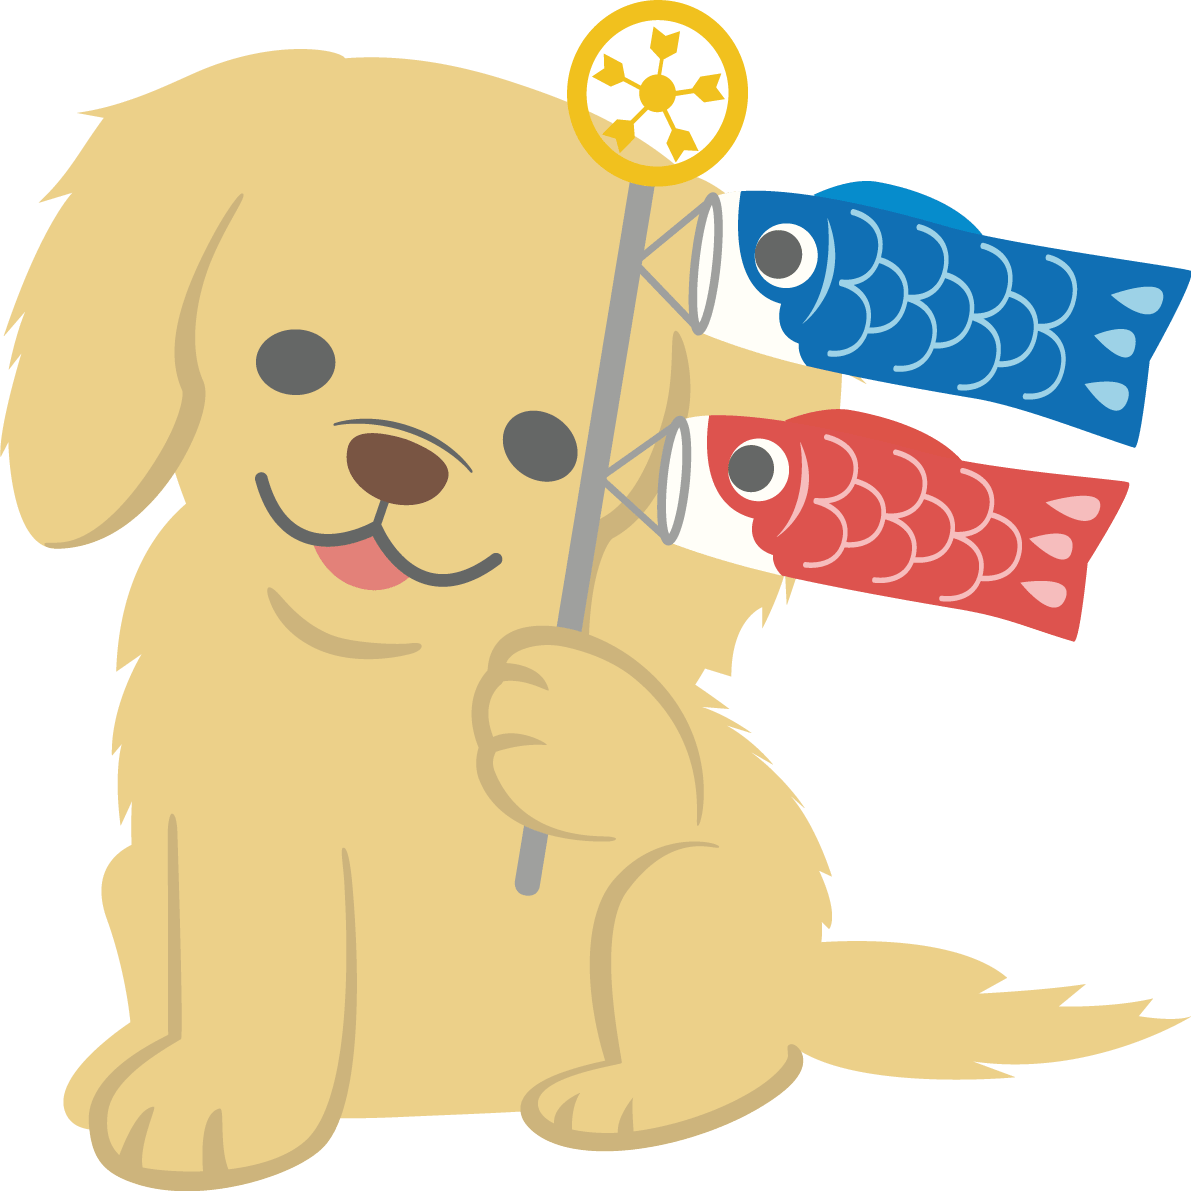 ゴールデン レトリーバー 犬 がこいのぼりを持つかわいい動物 イラスト素材 超多くの無料かわいいイラスト素材